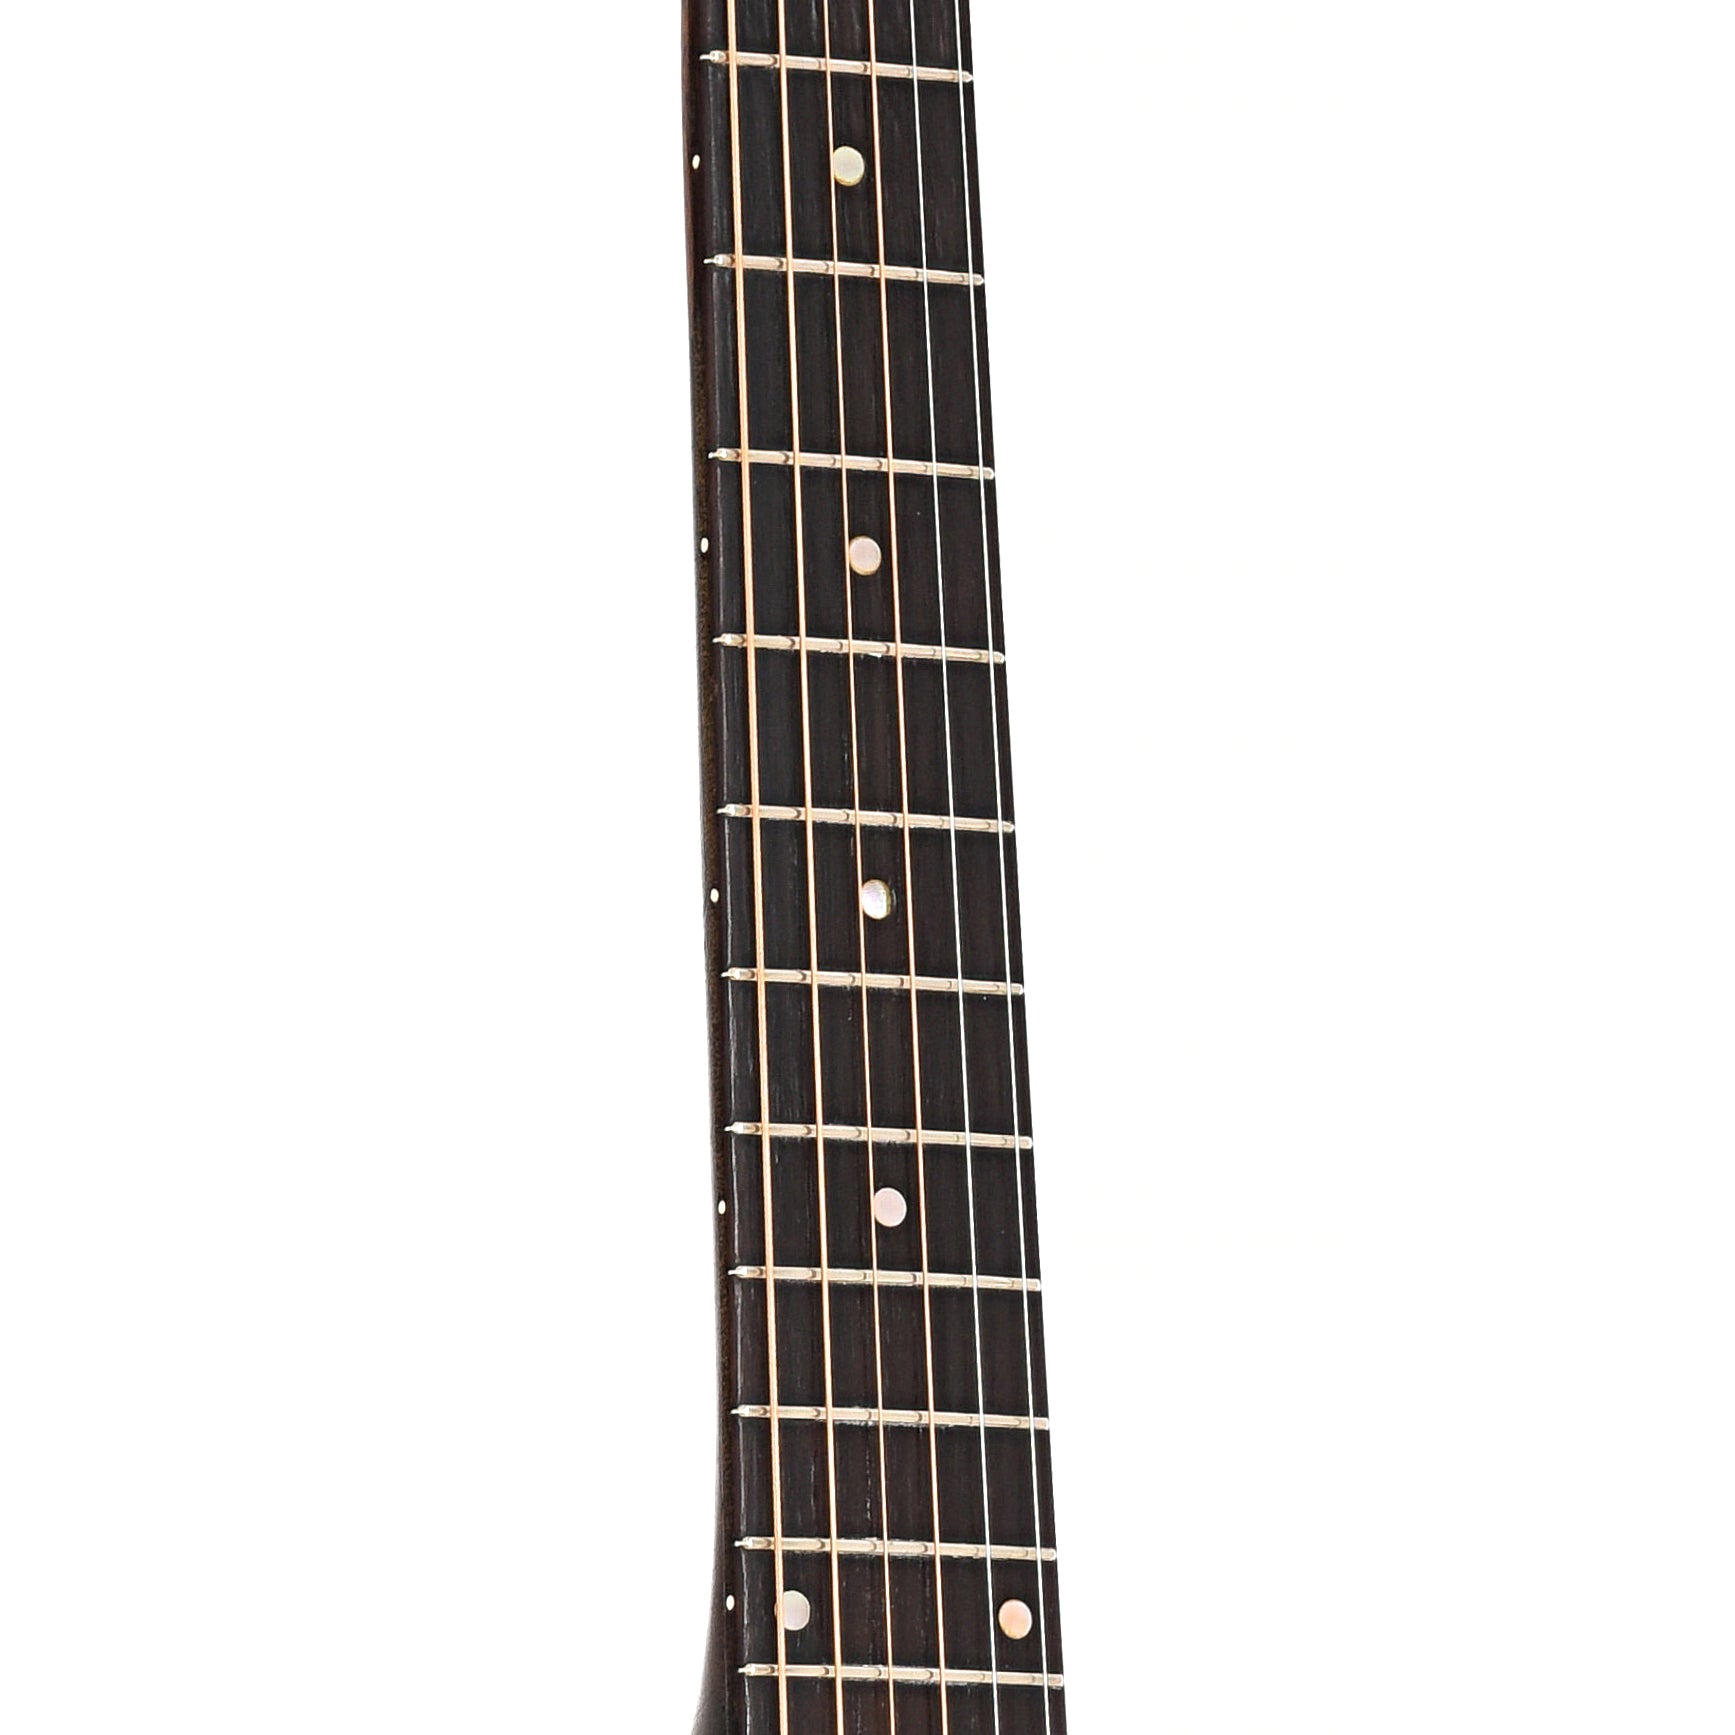 Fretboard of Gibson L-50